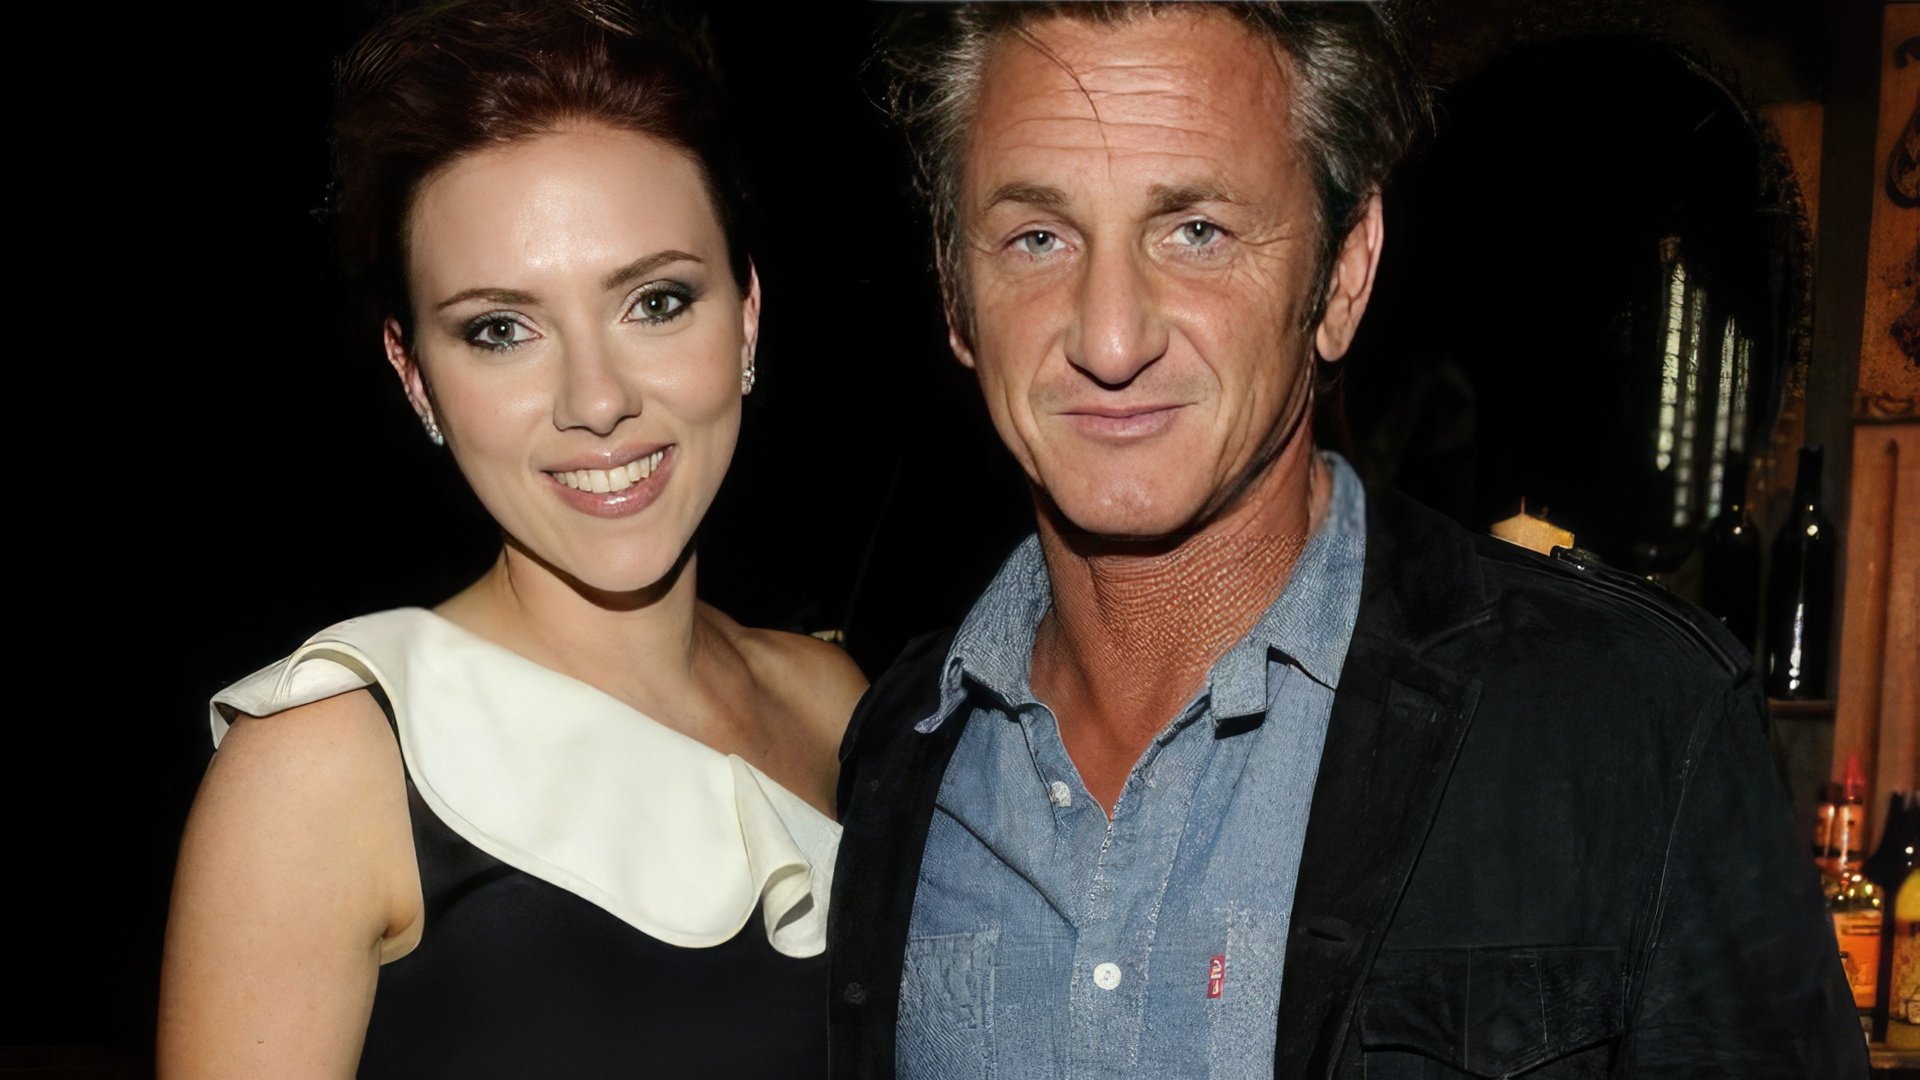 Scarlett Johansson and Sean Penn’s love affair was short